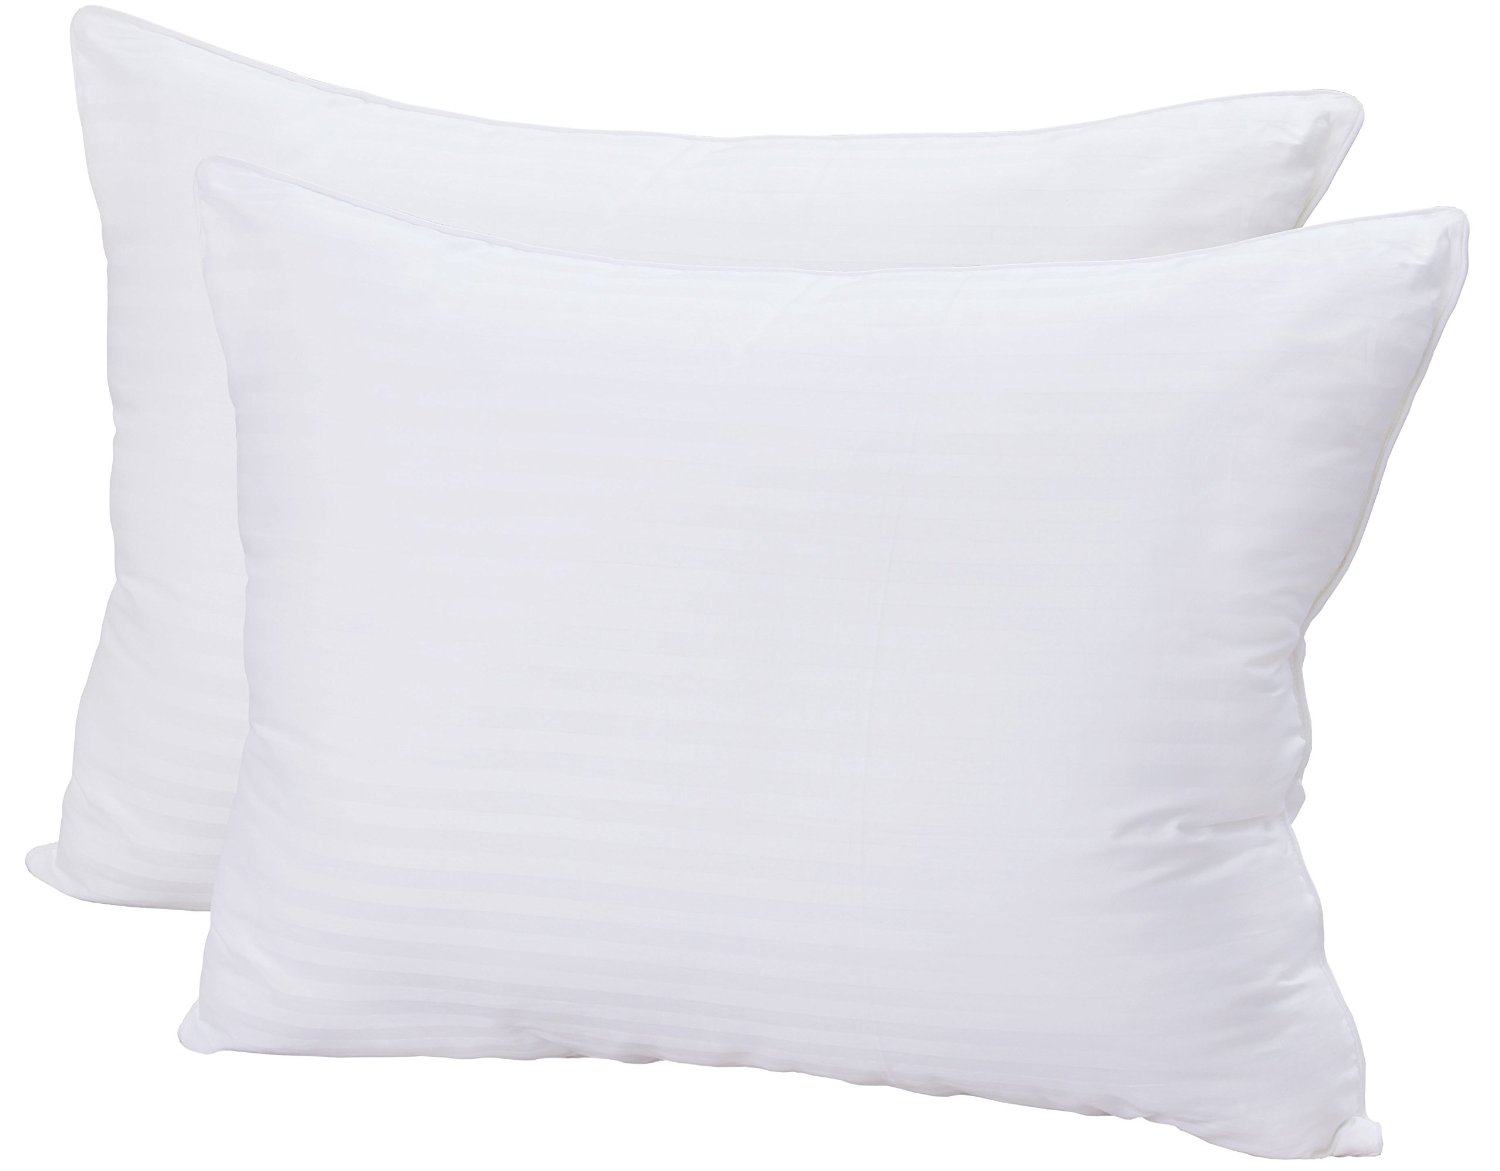 Super Plush 3D Hollow Gel Fiber Pillows, Pack of 2 – Just $27.99!